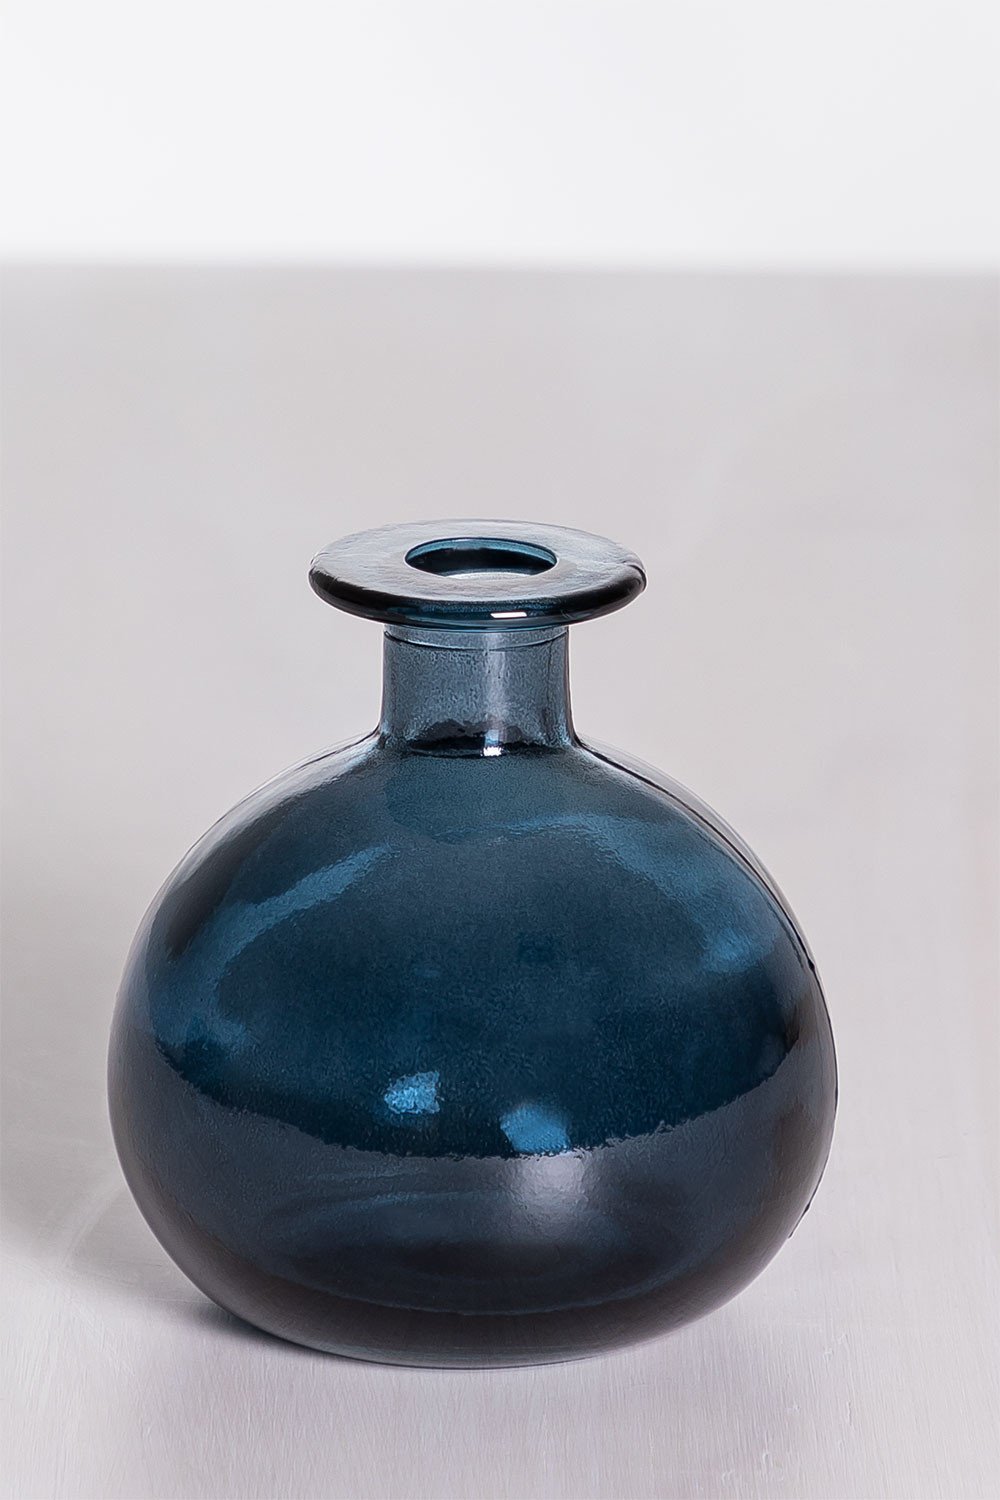 Vaas van gerecycled glas Endon, galerij beeld 2